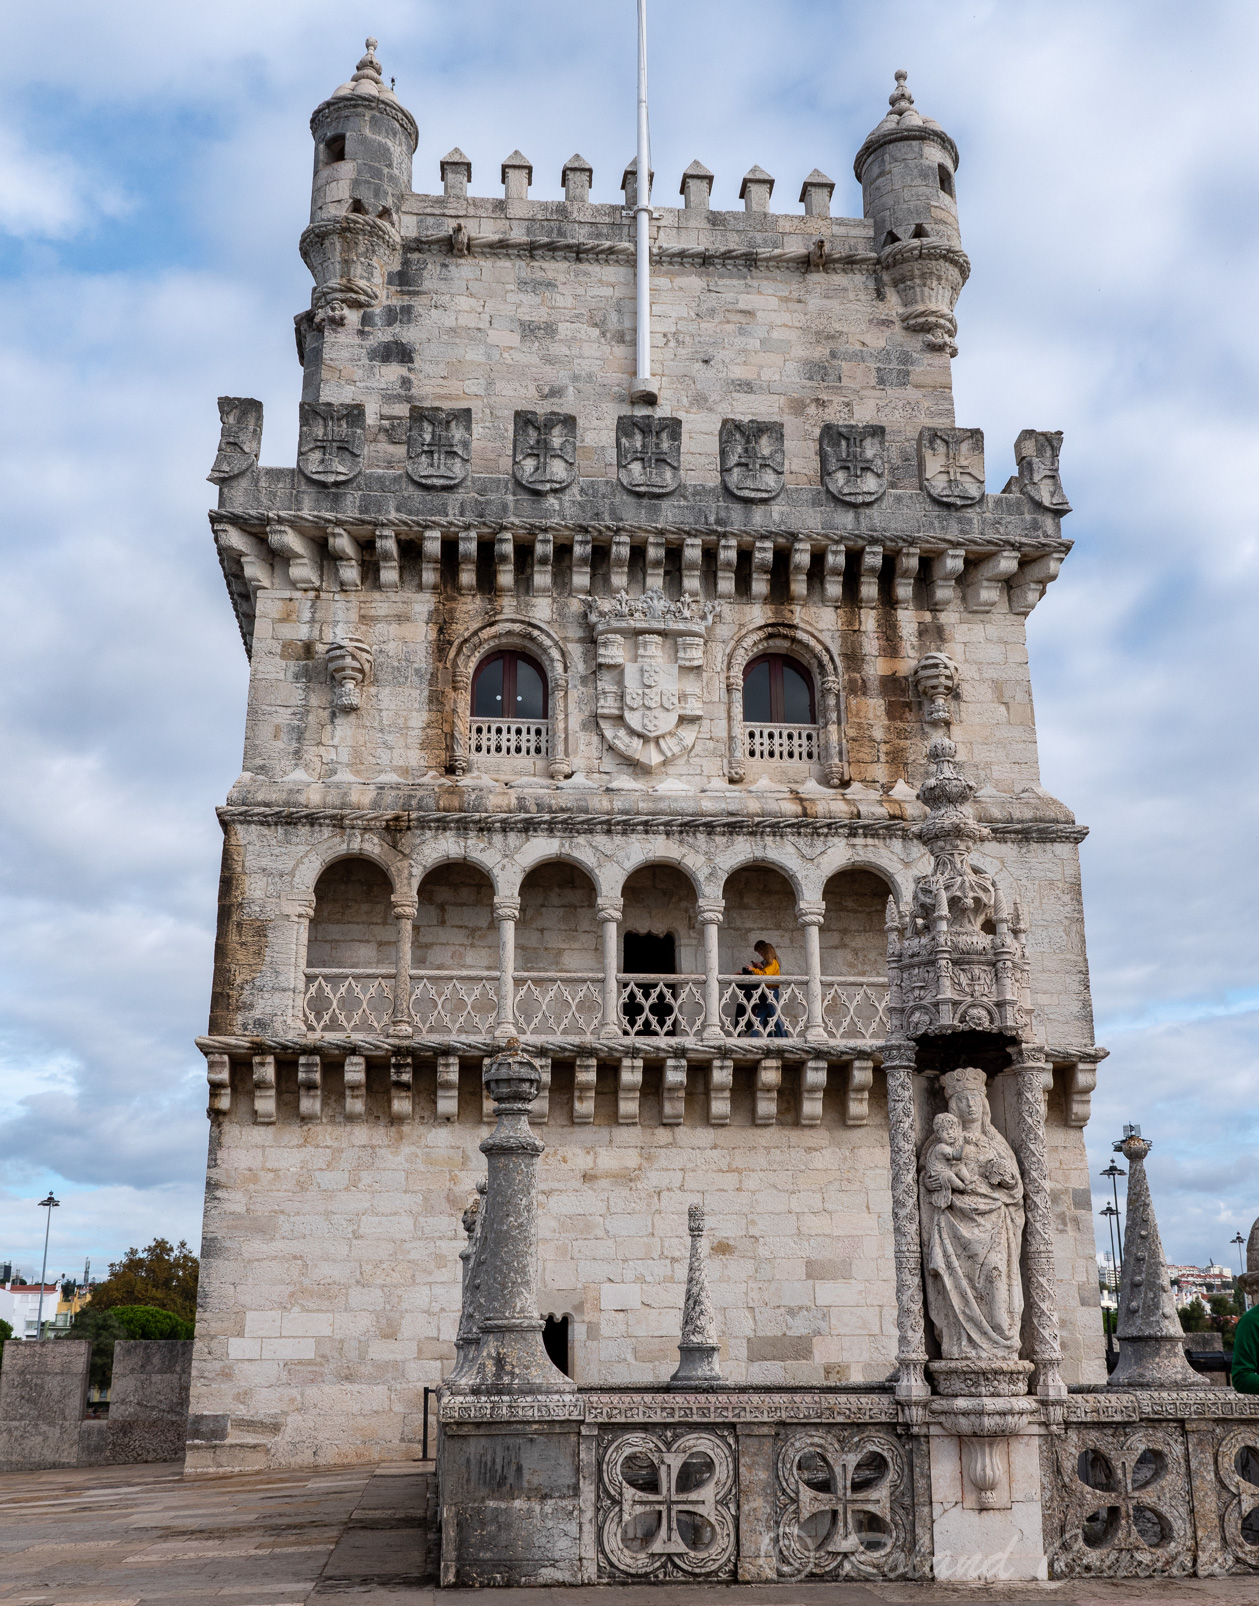 La loggia couverte de style Renaissance court sur toute la longueur de la face sud du premier étage de la tour, donnant une touche vénitienne à l'architecture du bâtiment.